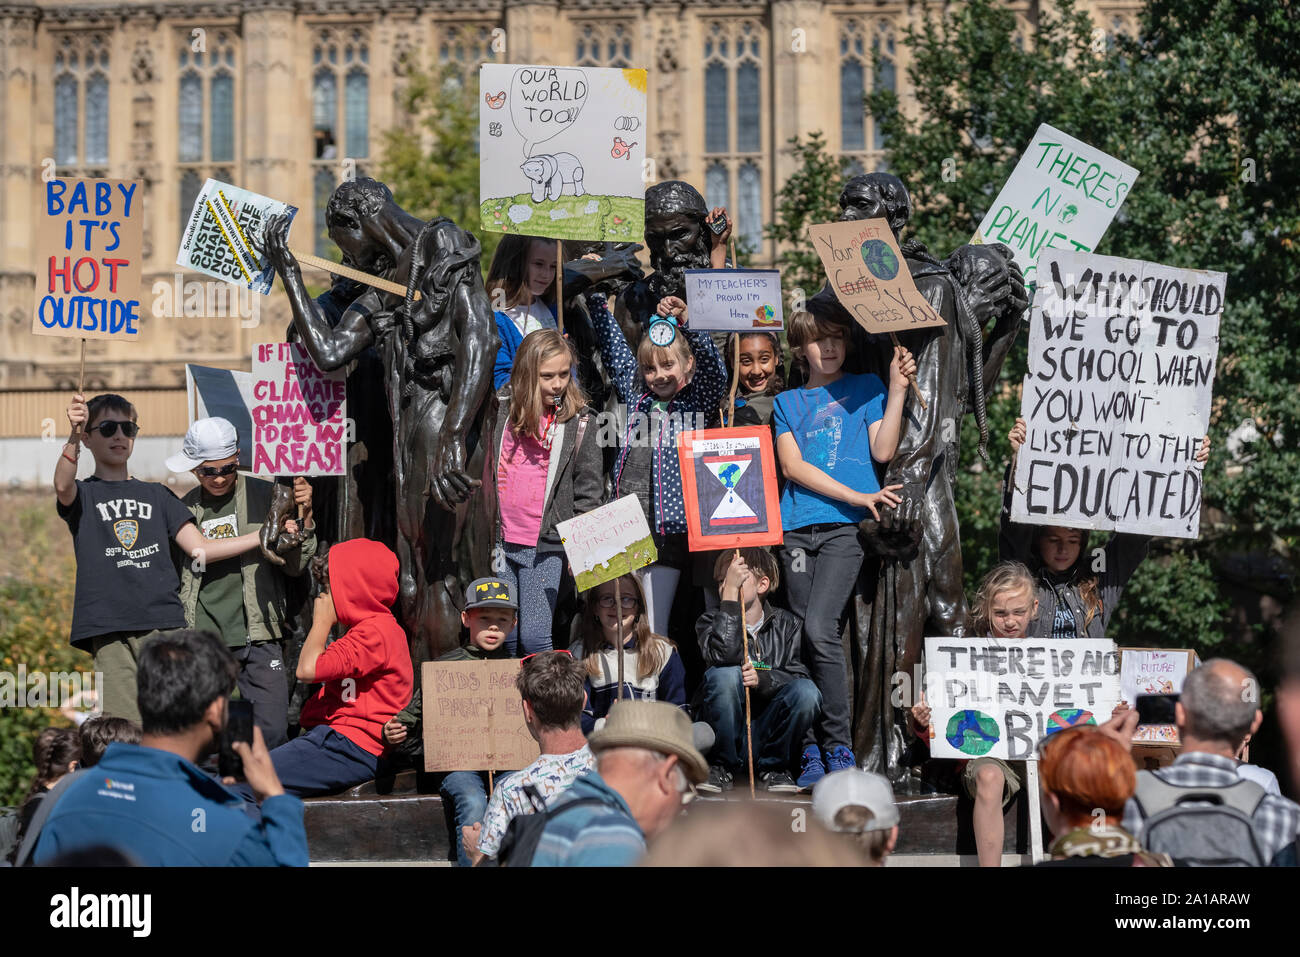 Jugend Streik 4 Klima. Tausende Schüler und Studenten gehen aus von den Lektionen, die in Westminster als Teil eines landesweiten Streik aus Protest gegen den Klimawandel Stockfoto